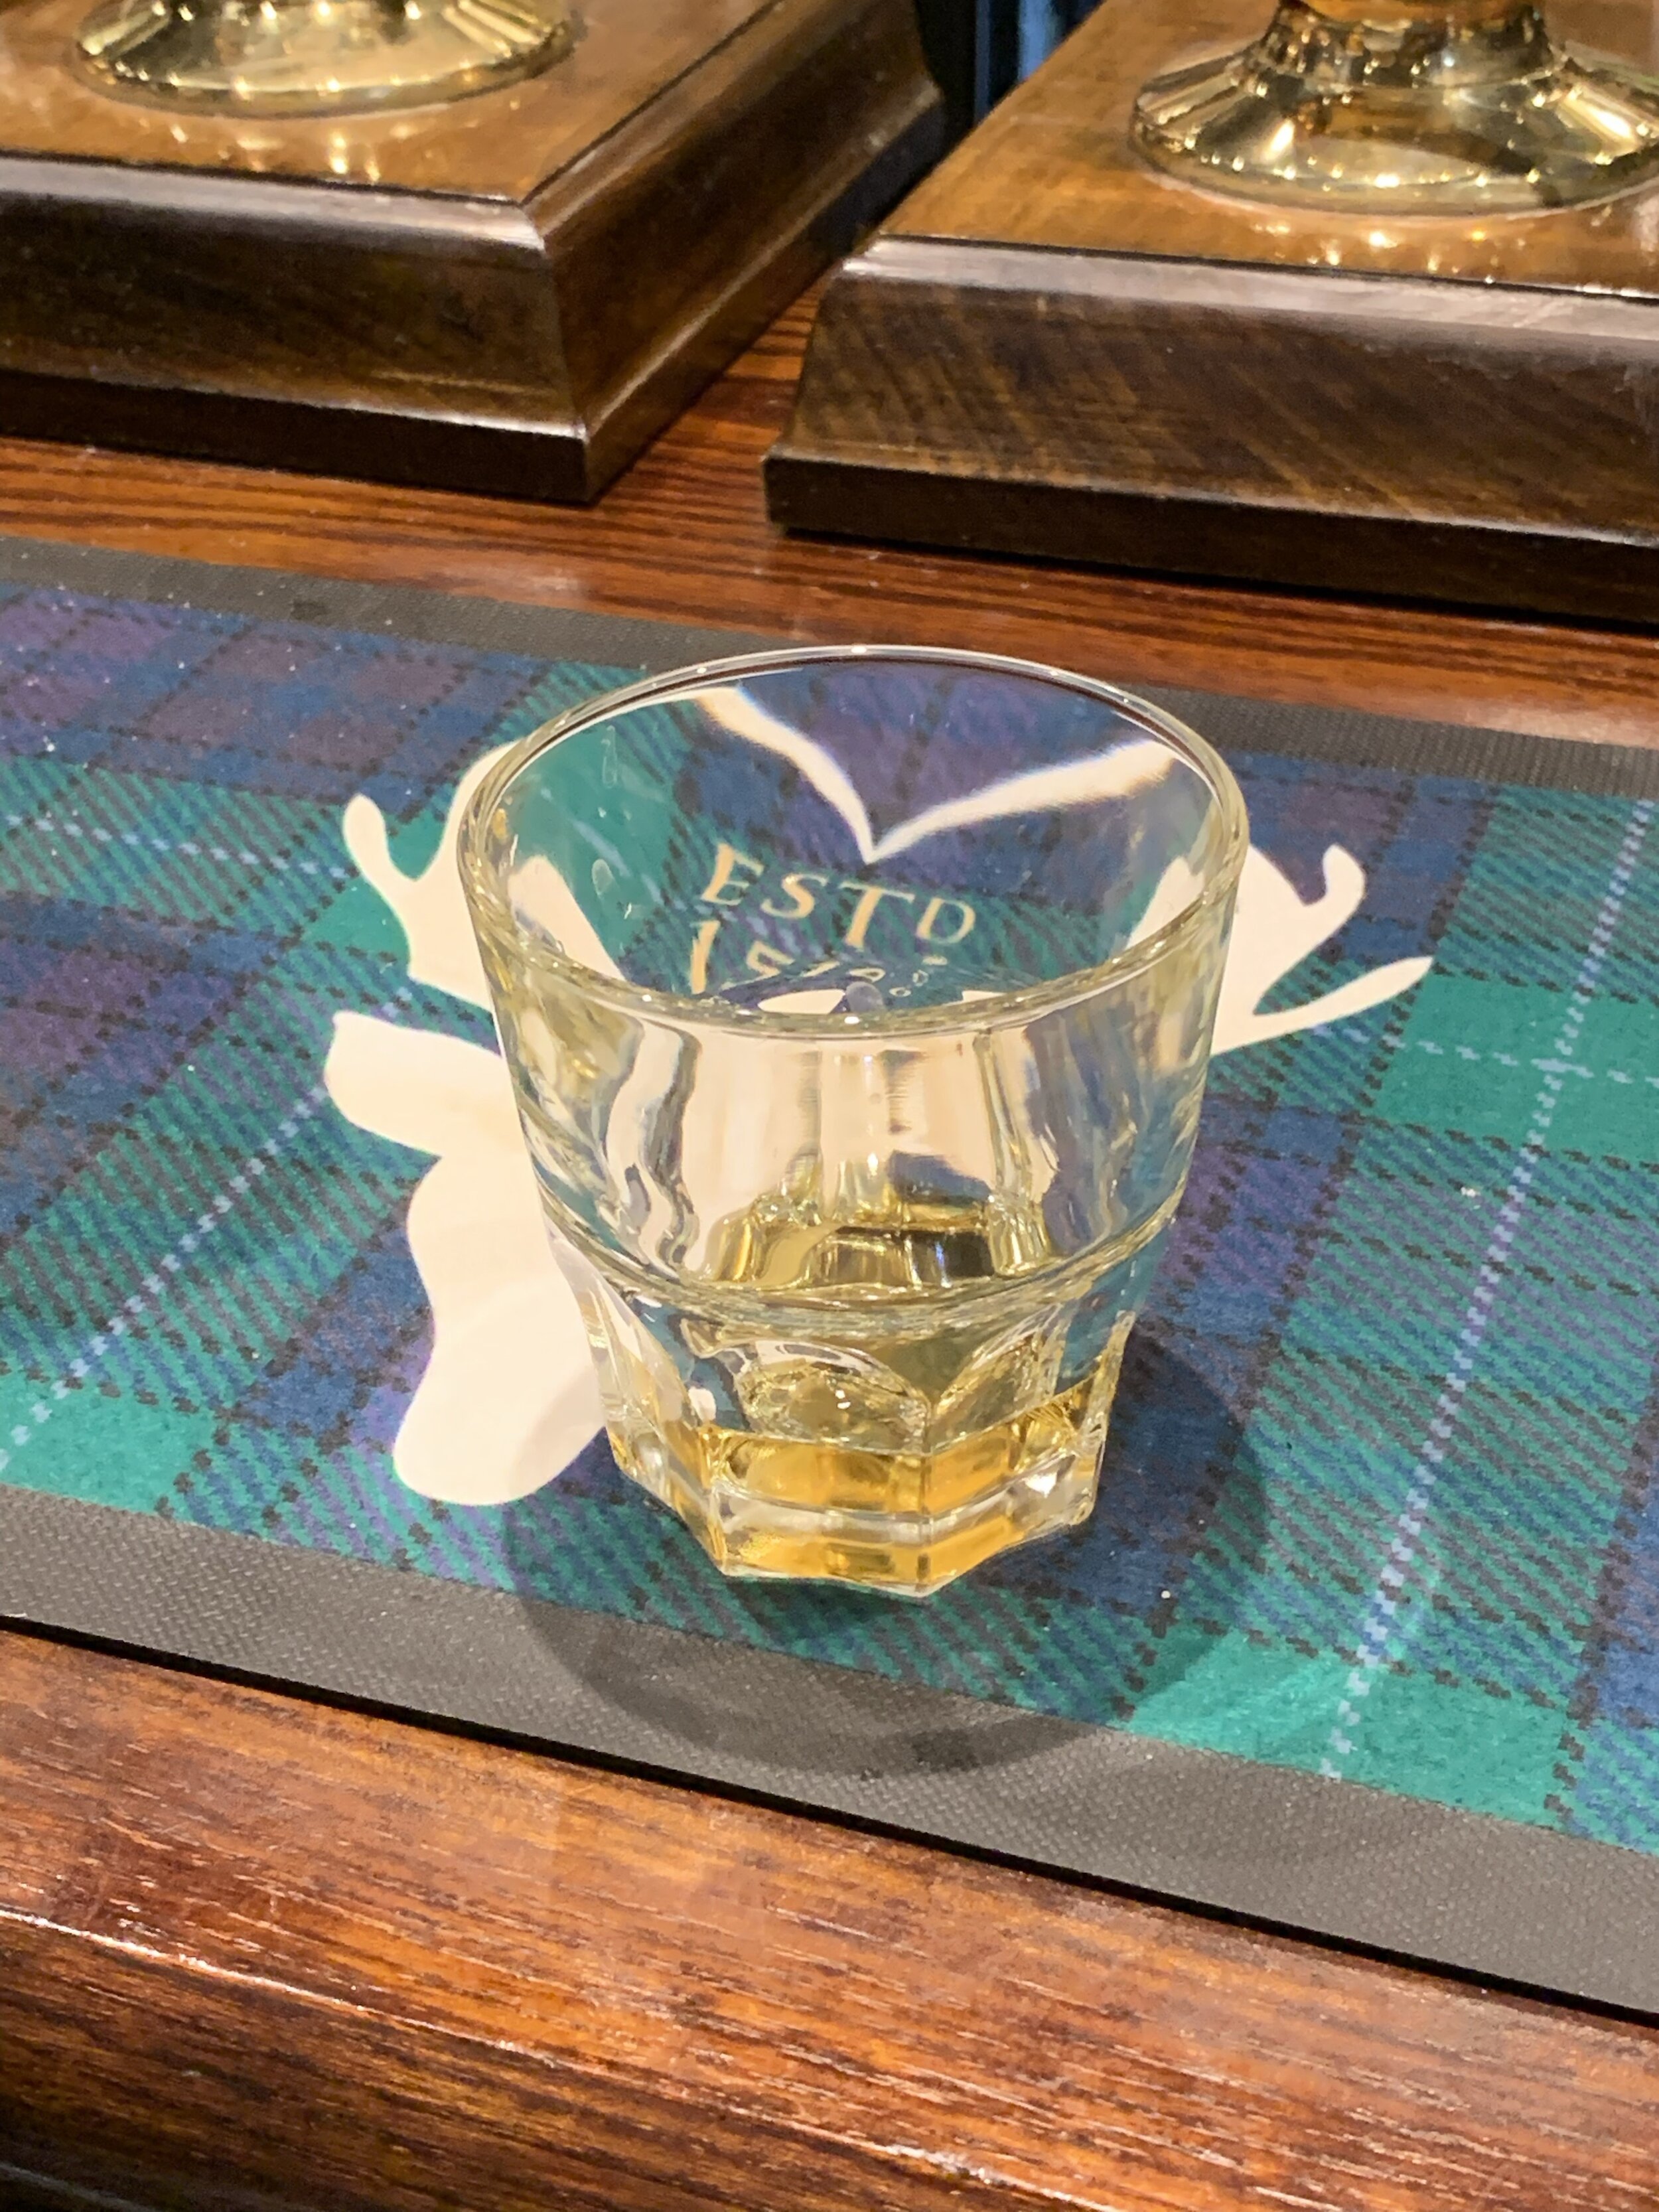 My First Scotch in Scotland